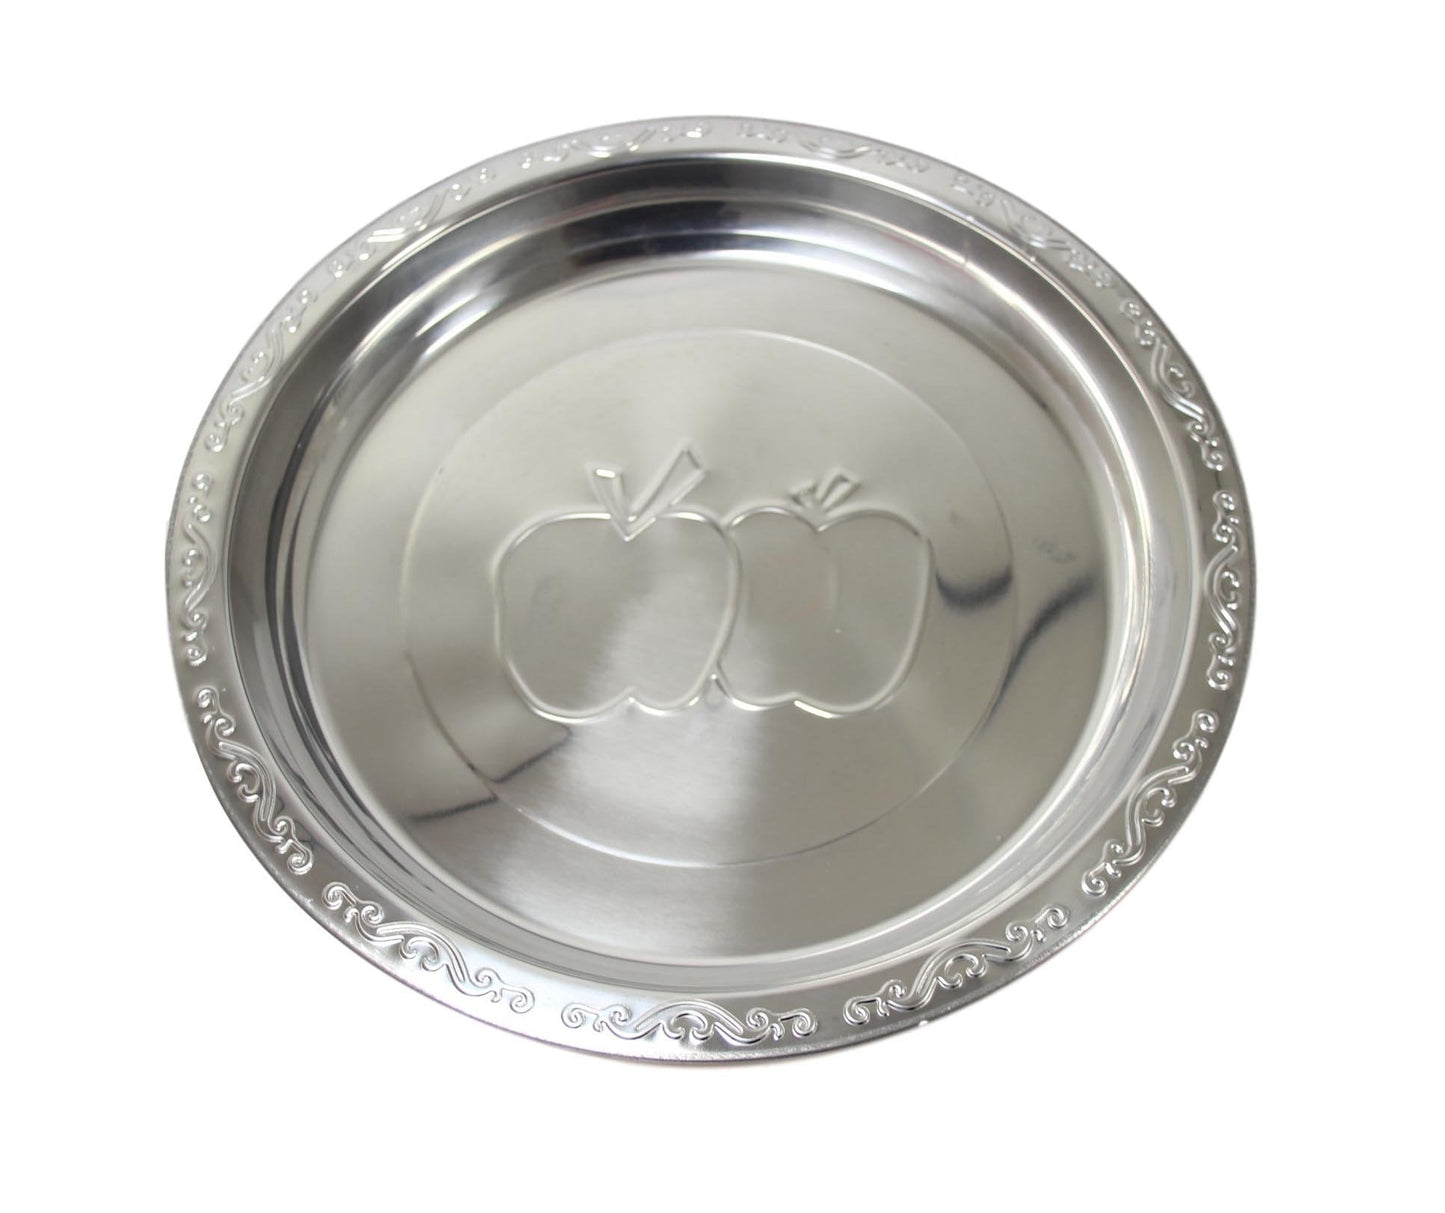 Steel Serving Food Dish Platter Plate Apple Design 50cm 5631 (Parcel Rate)